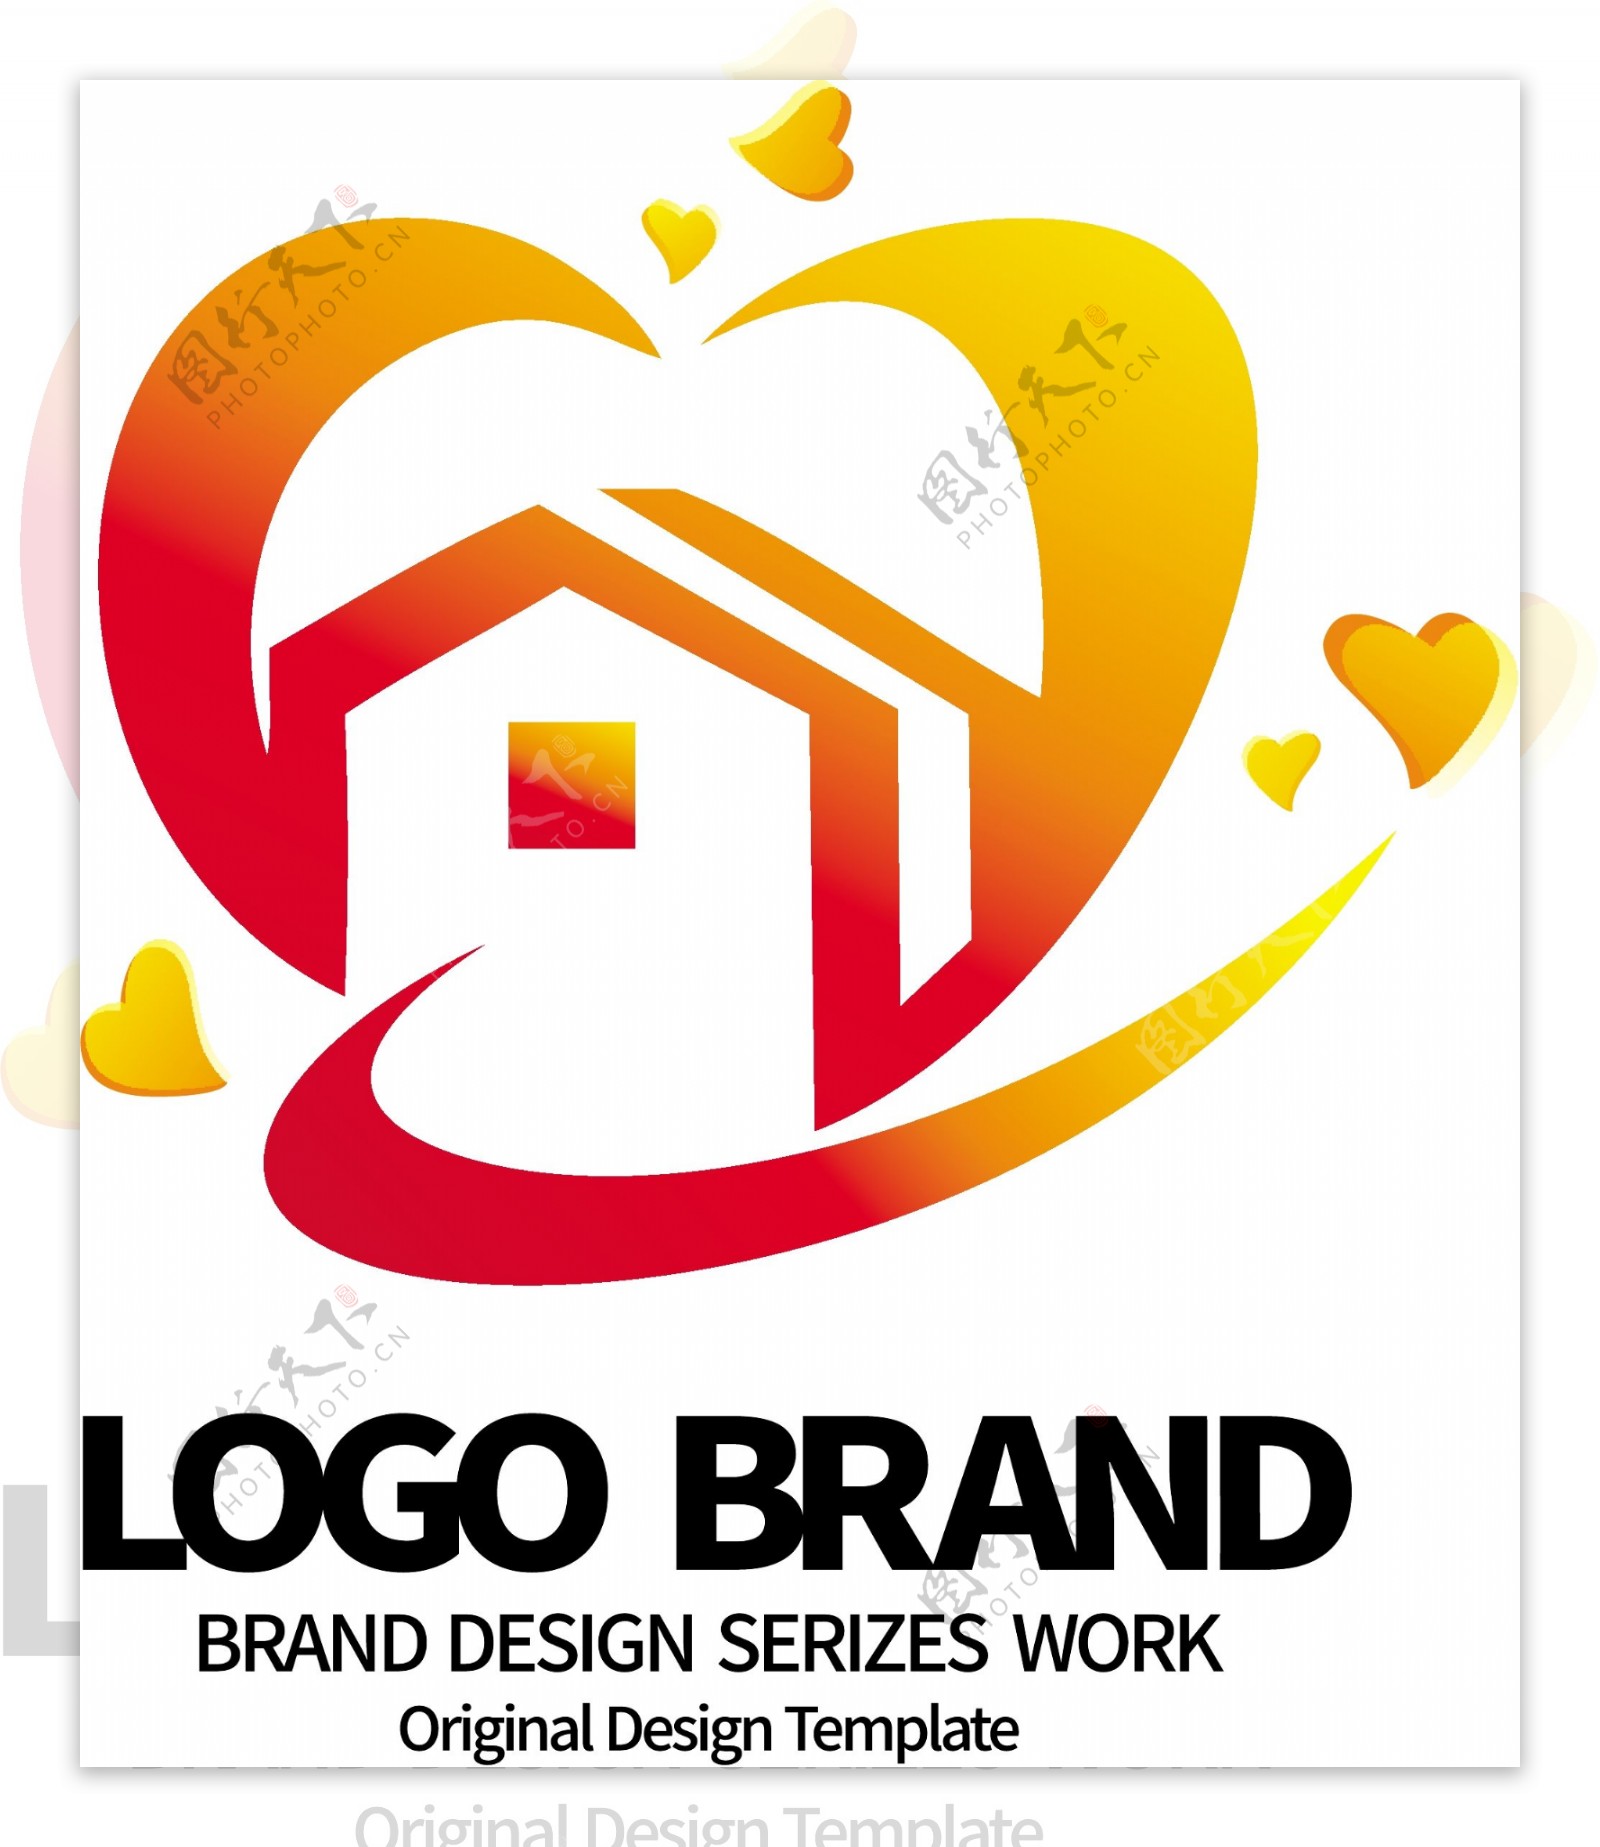 简约创意红黄爱心房屋LOGO标志设计